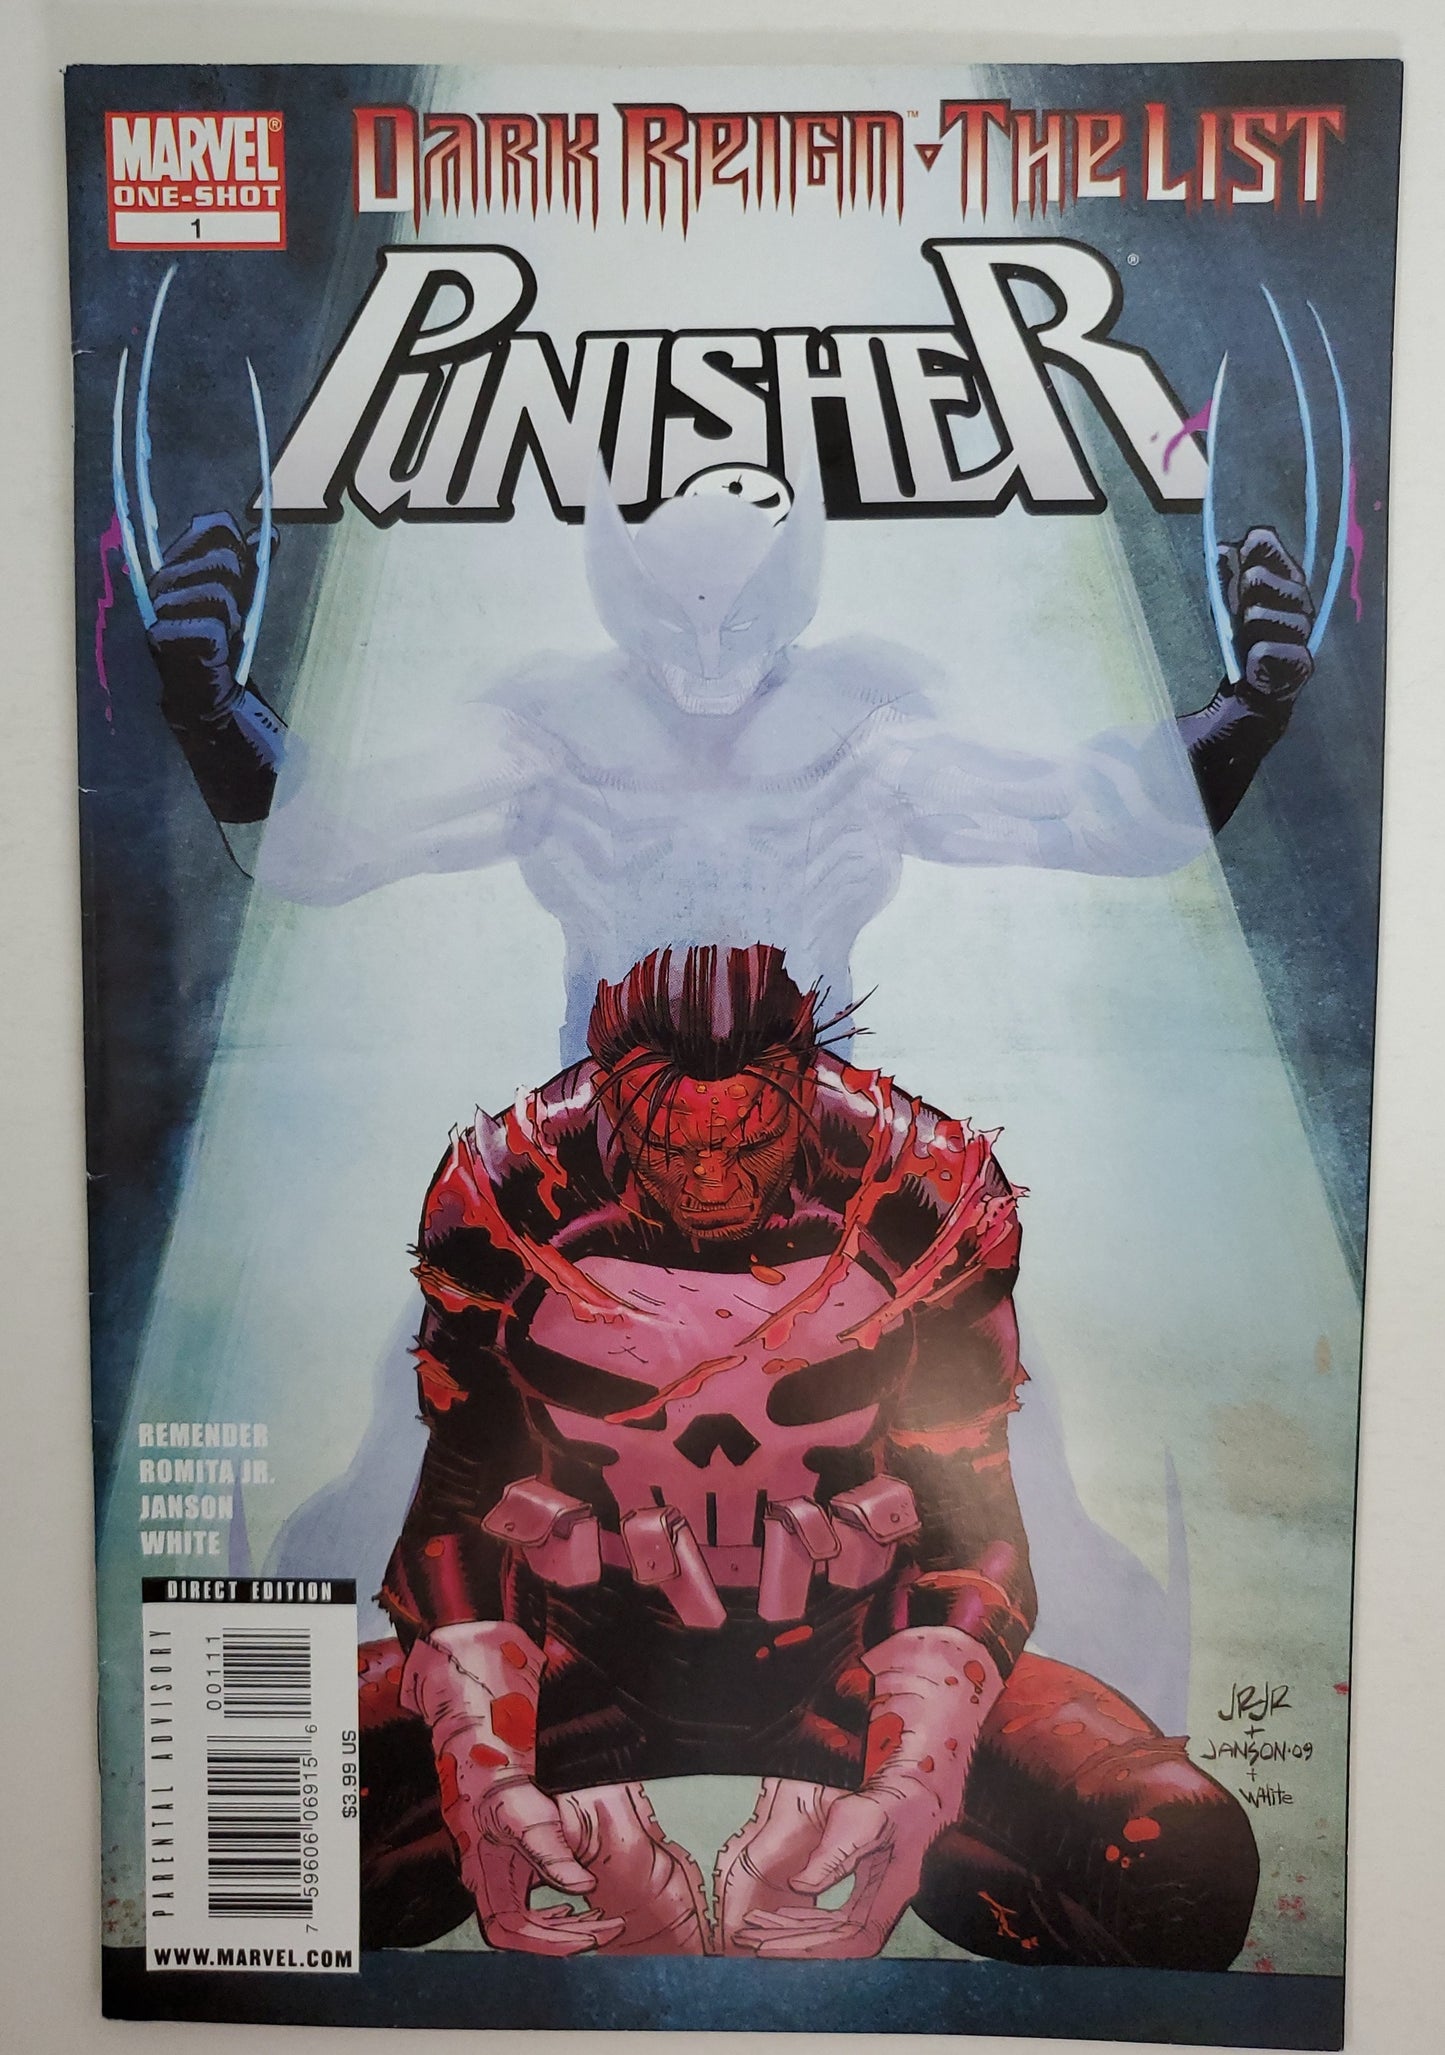 Marvel Punisher Dark Reign Vol 1 #1 The List One-Shot